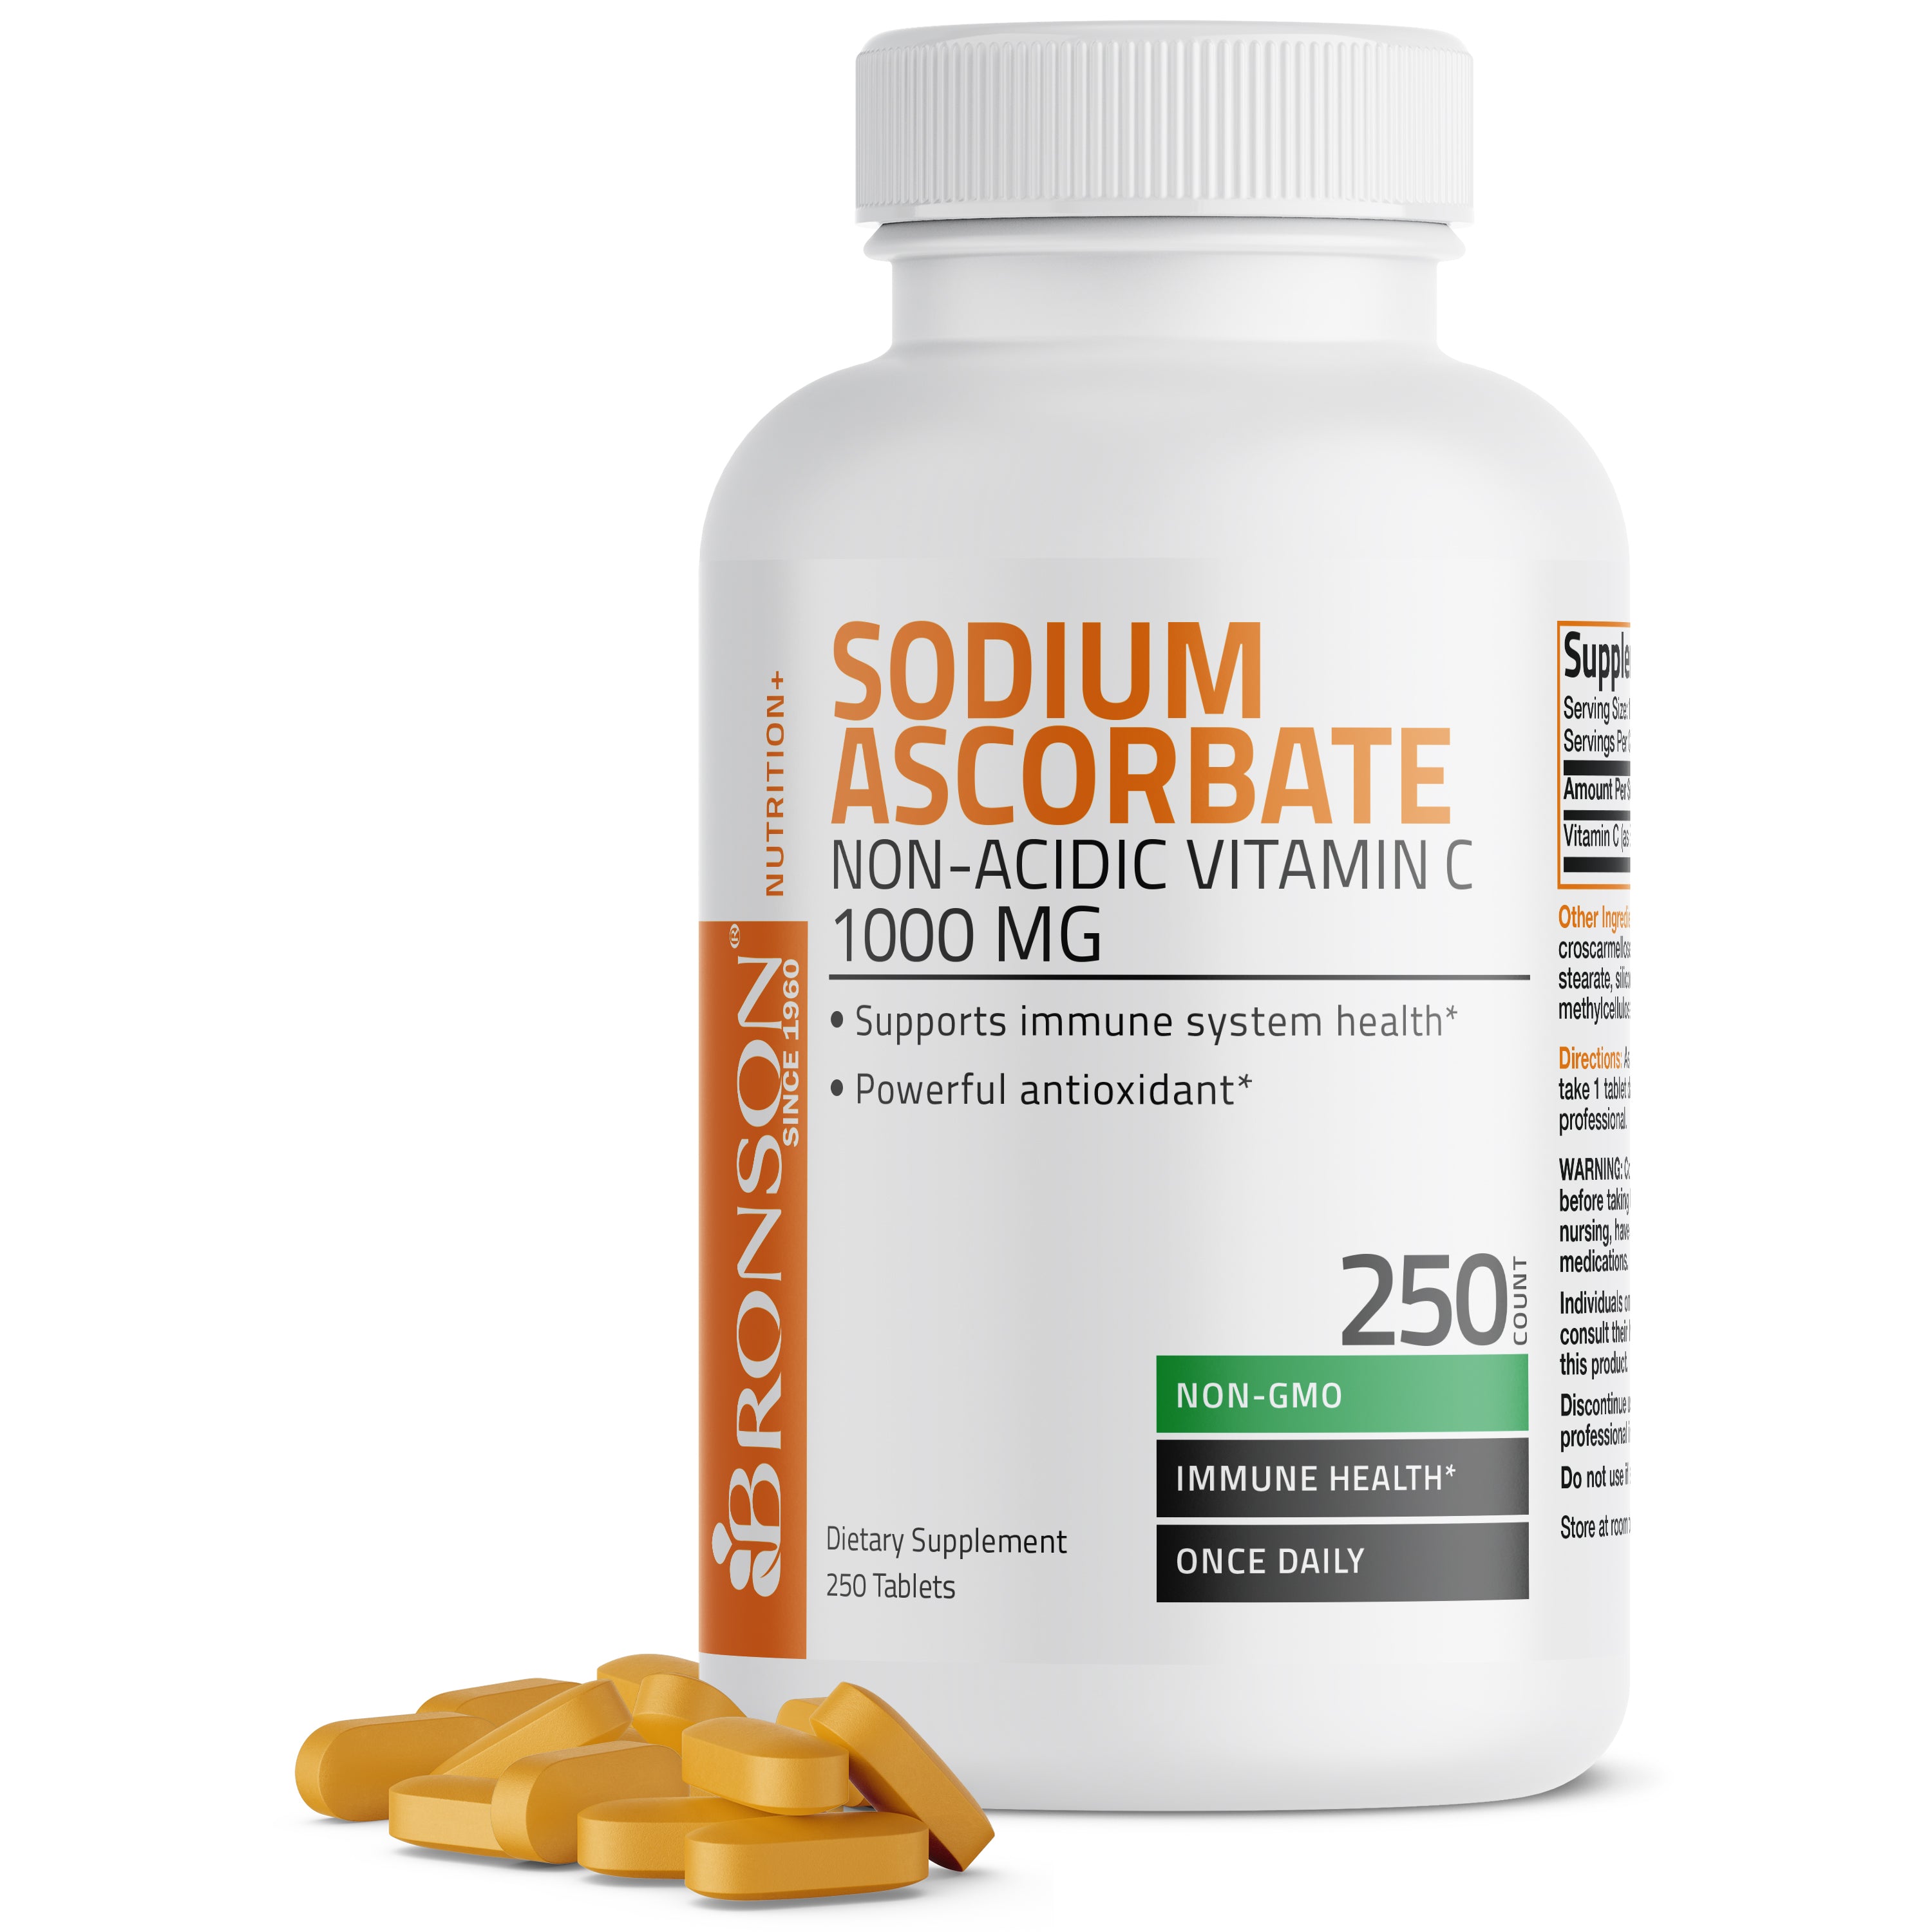 Vitamin C Sodium Ascorbate Non-Acidic Non-GMO - 1000 mg